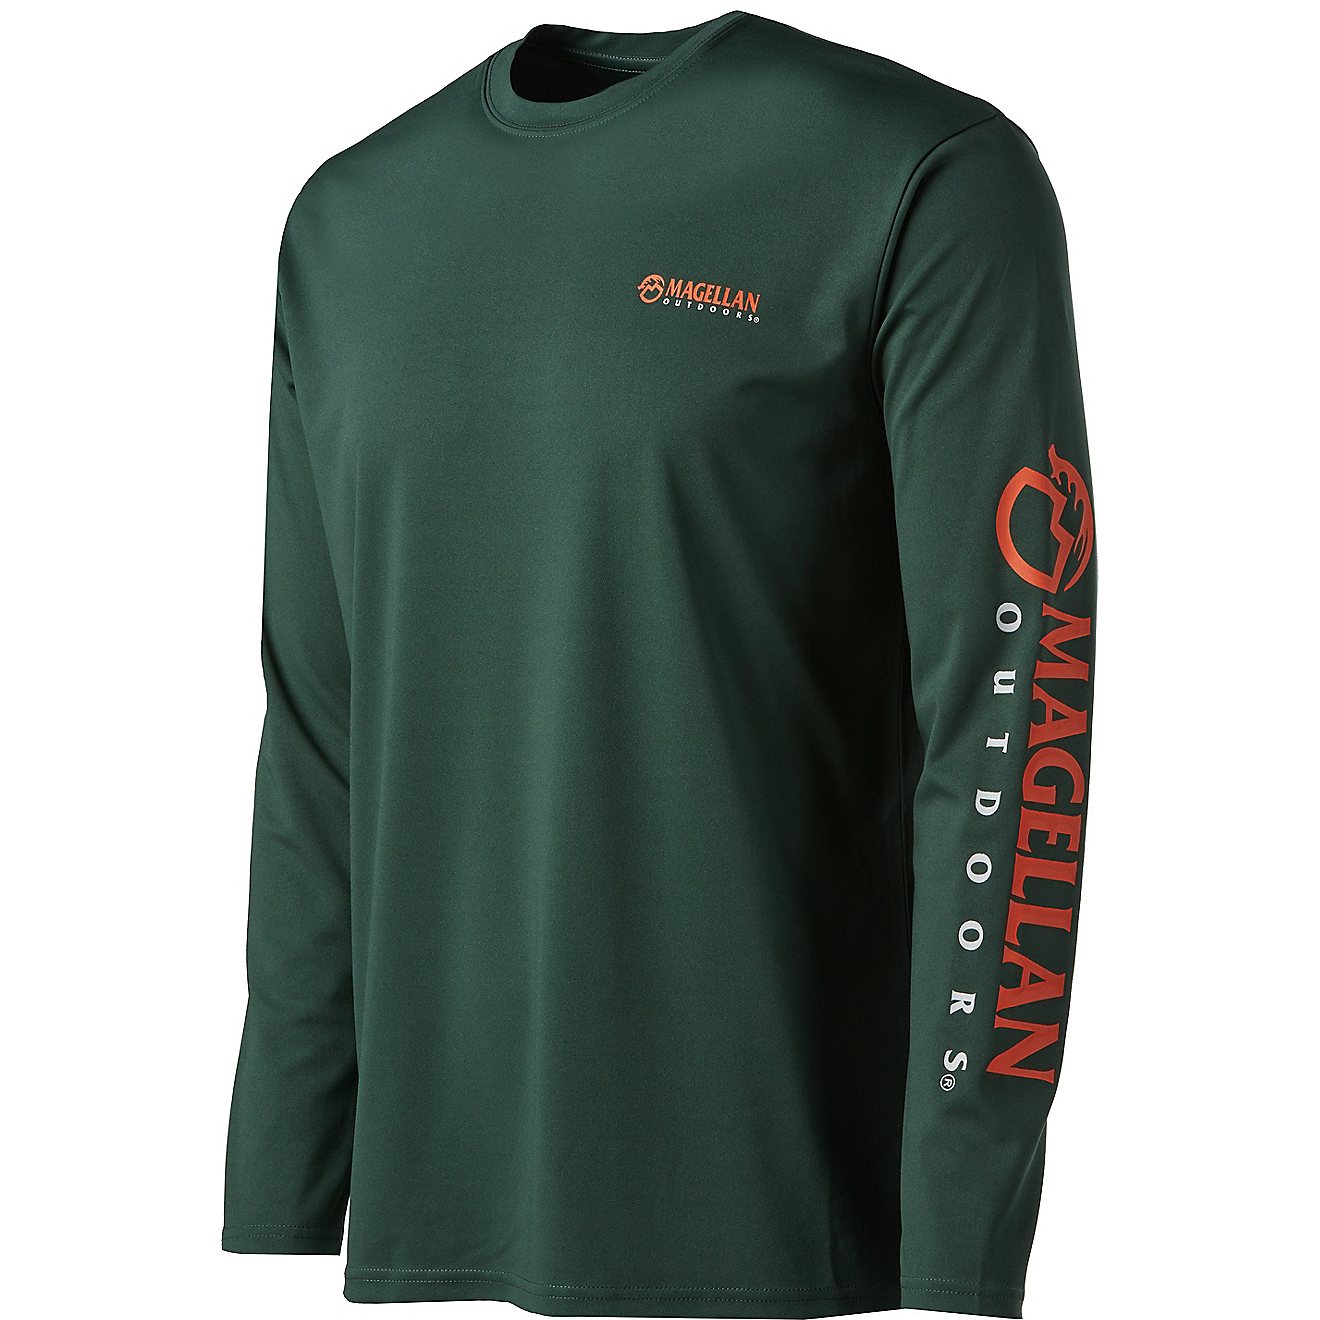 Magellan Outdoors Men's HuntGear Performance Long Sleeve T-shirt                                                                 - view number 1